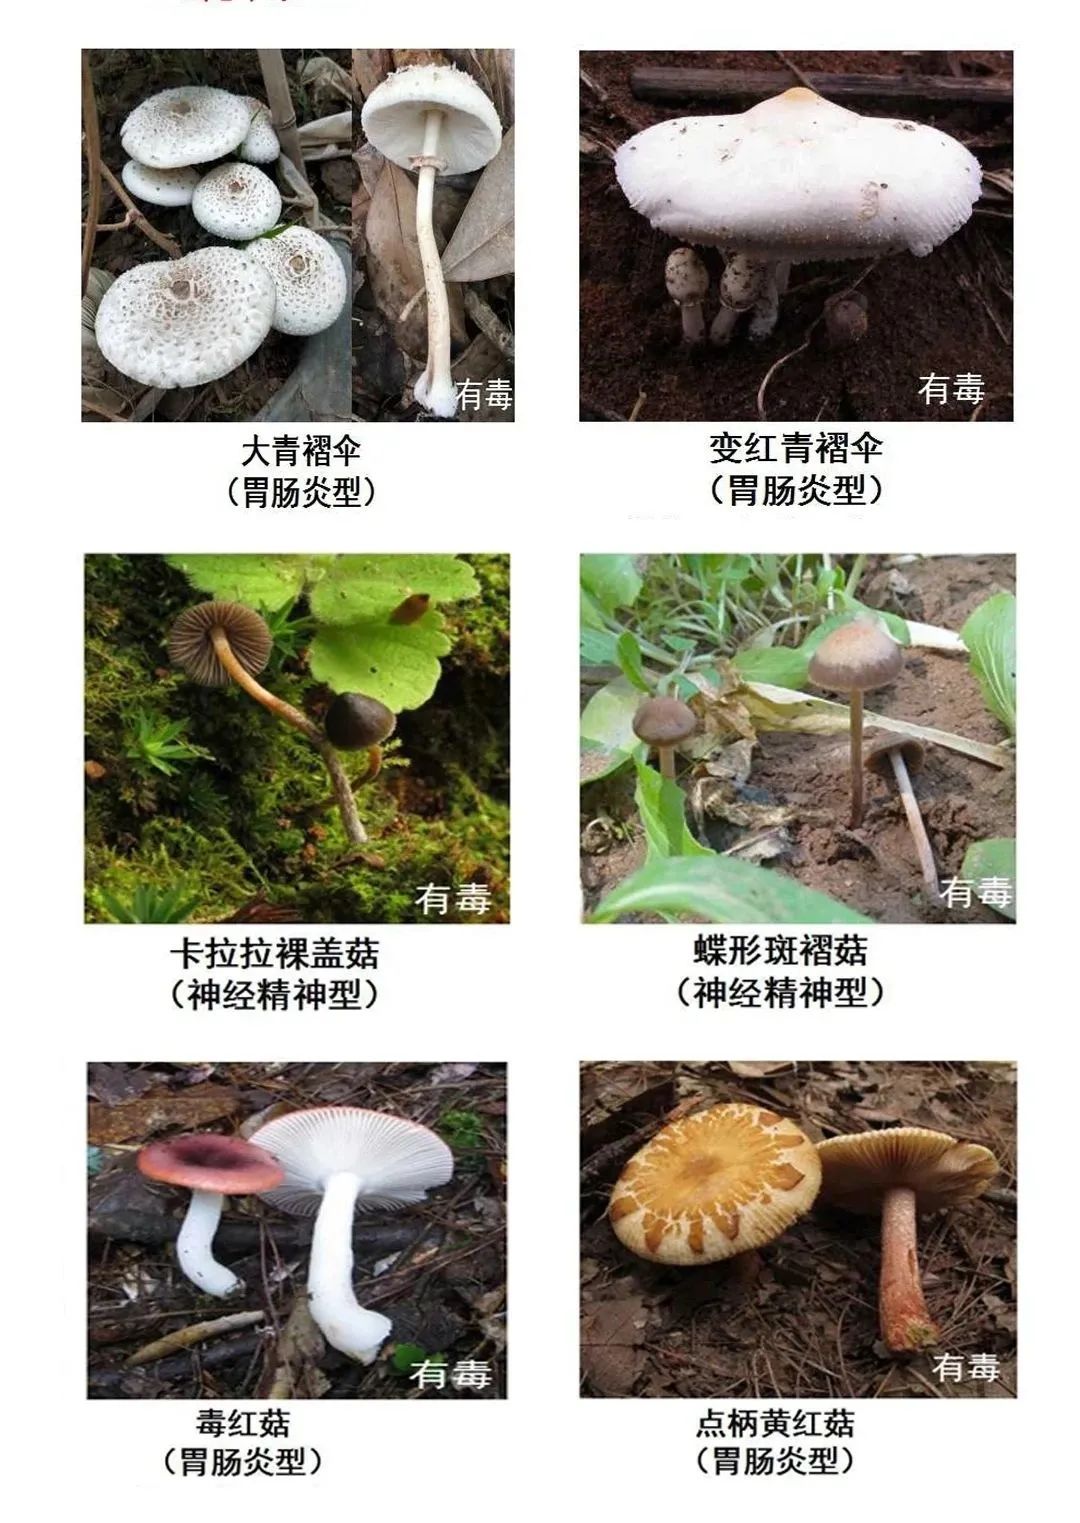 目前没有简单易行,快速有效的识别蘑菇是否有毒的方法.